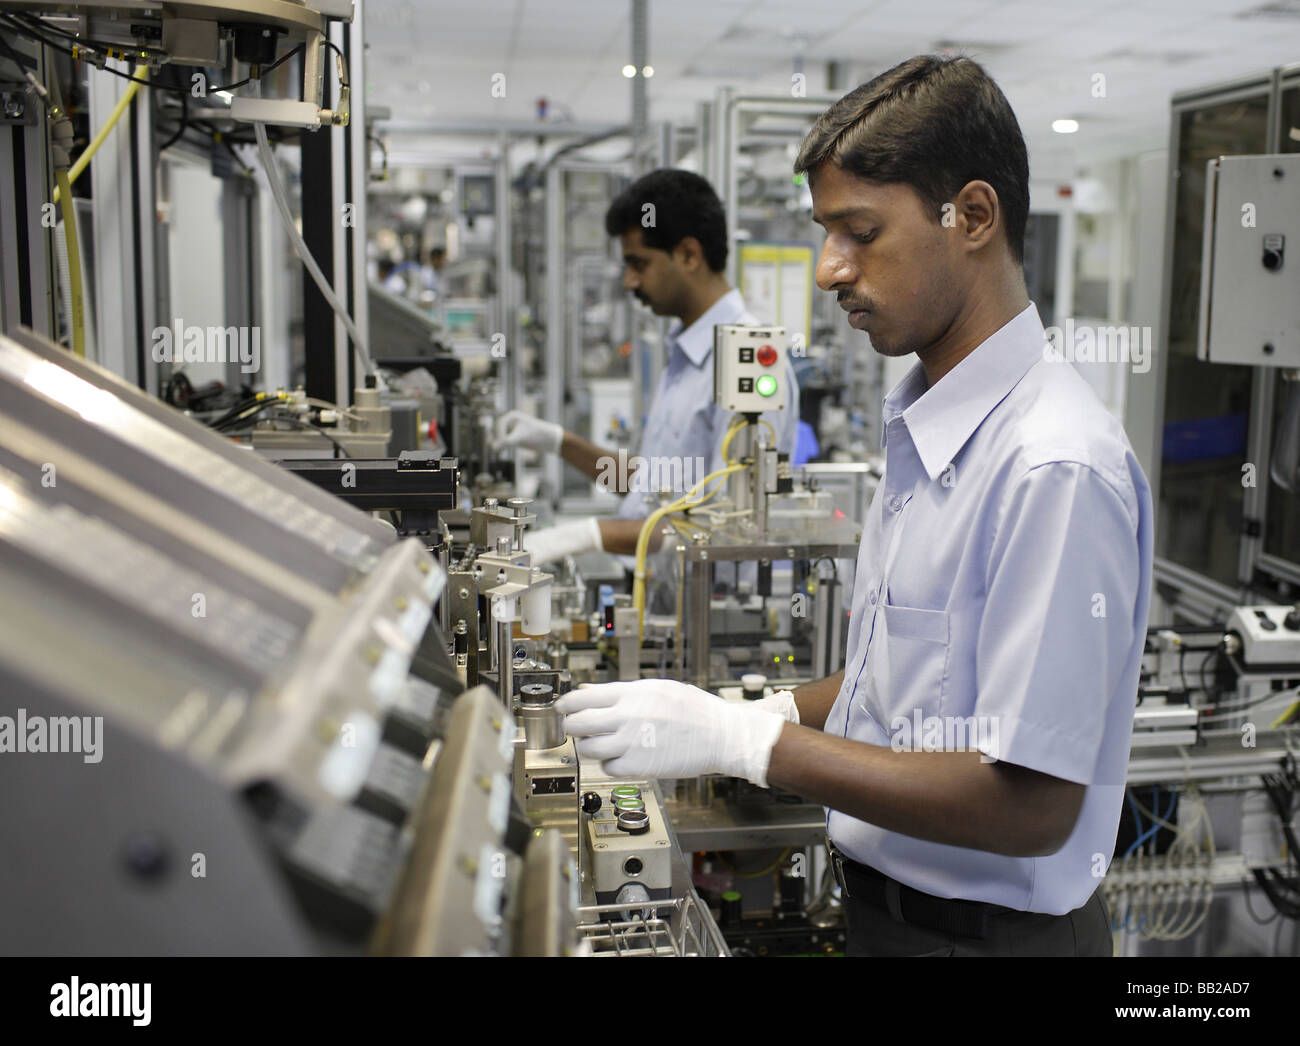 Mitarbeiter der Bosch Ltd in Bangalore Hier Werden Dieseleinspritzpumpen Gefertigt Indien Mitarbeiter von Bosch Ltd Bangalore Indien Stockfoto